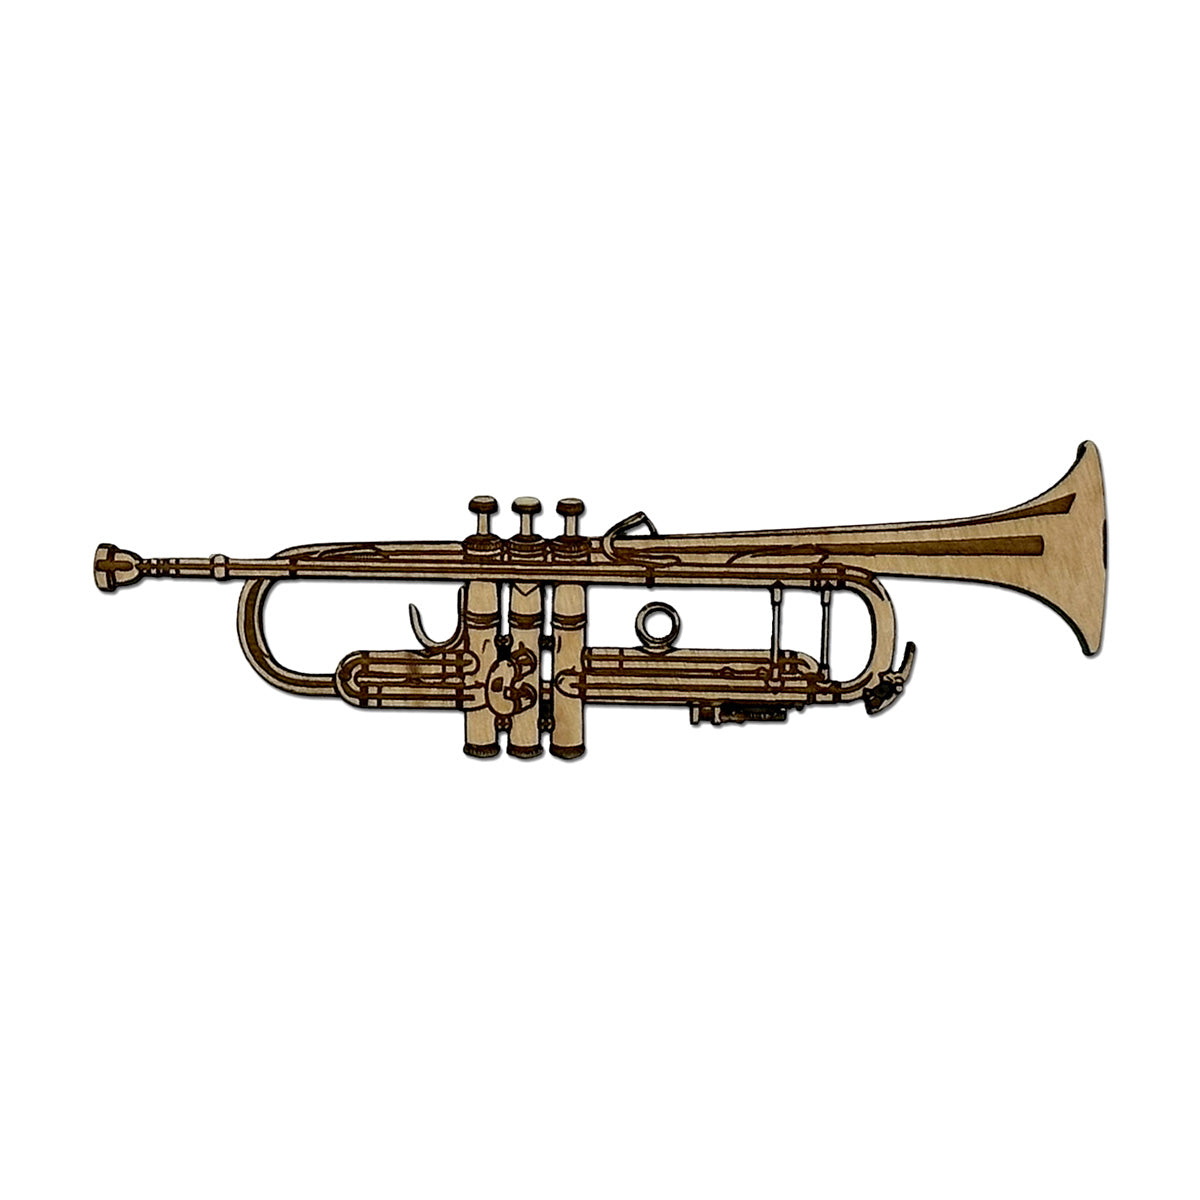 Trumpet Ornament